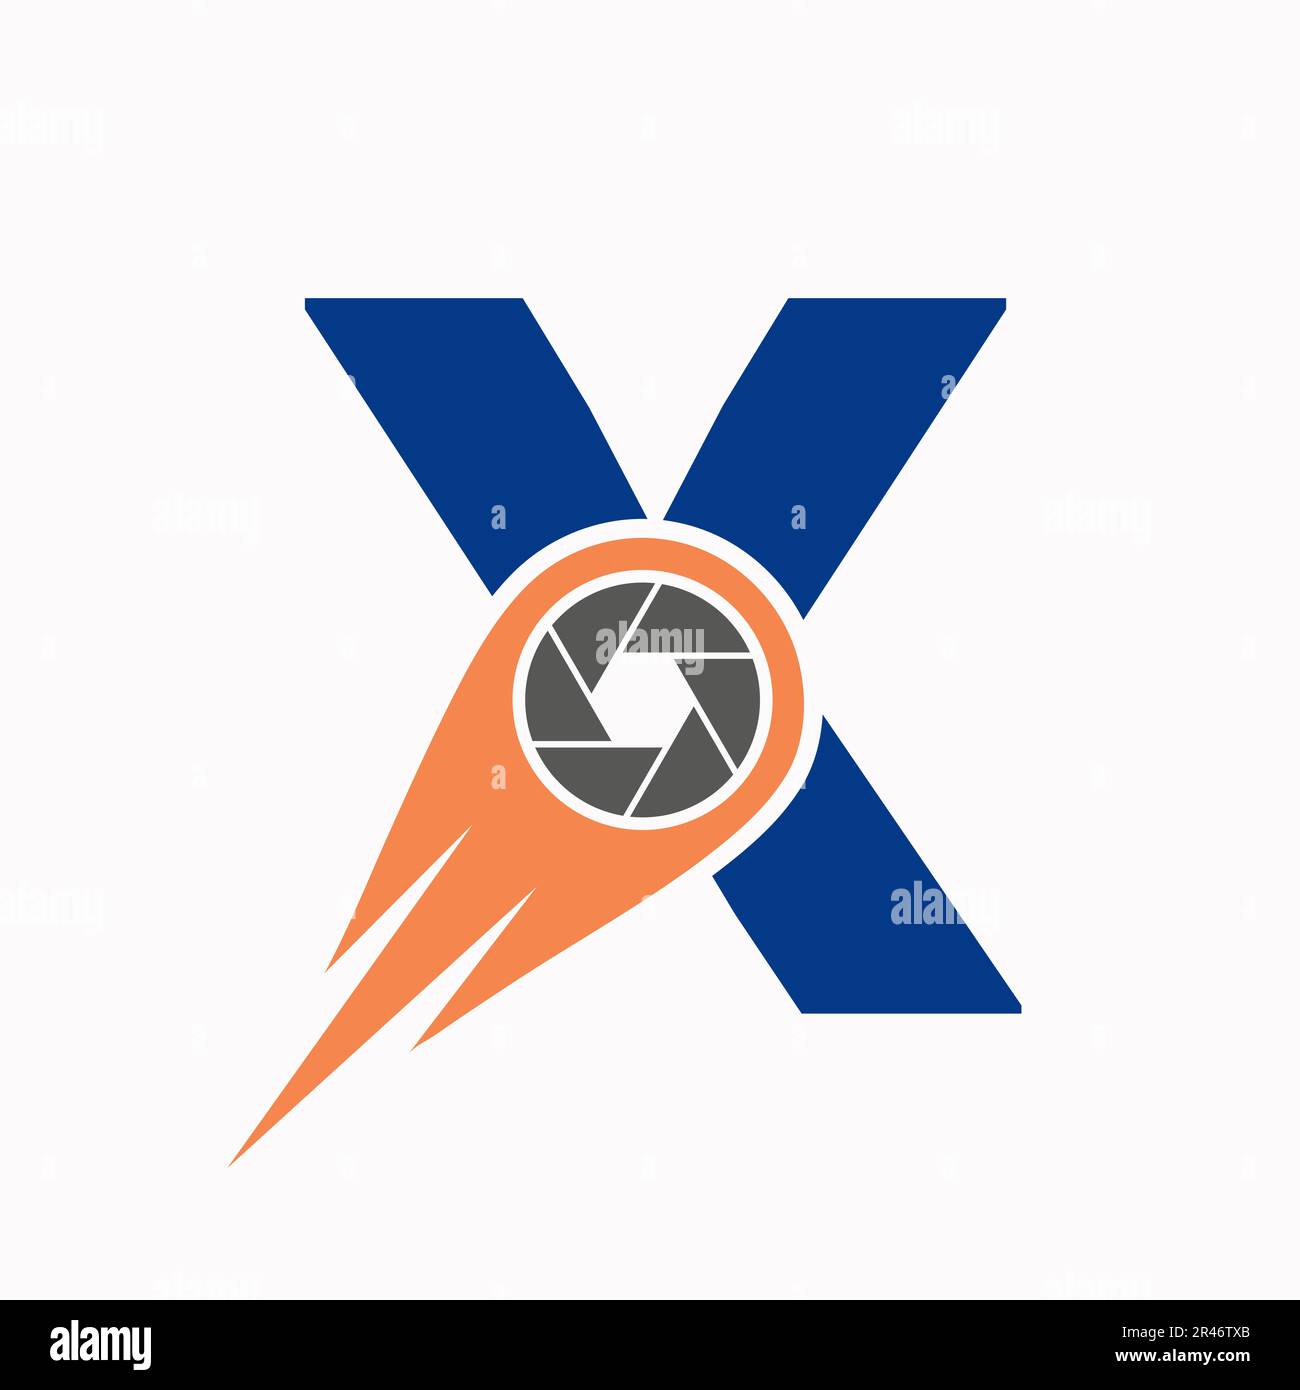 Ursprüngliches Konzept des Letter X Foto-Logo-Kameraobjektivs. Vorlage Für Fotosymbole Stock Vektor